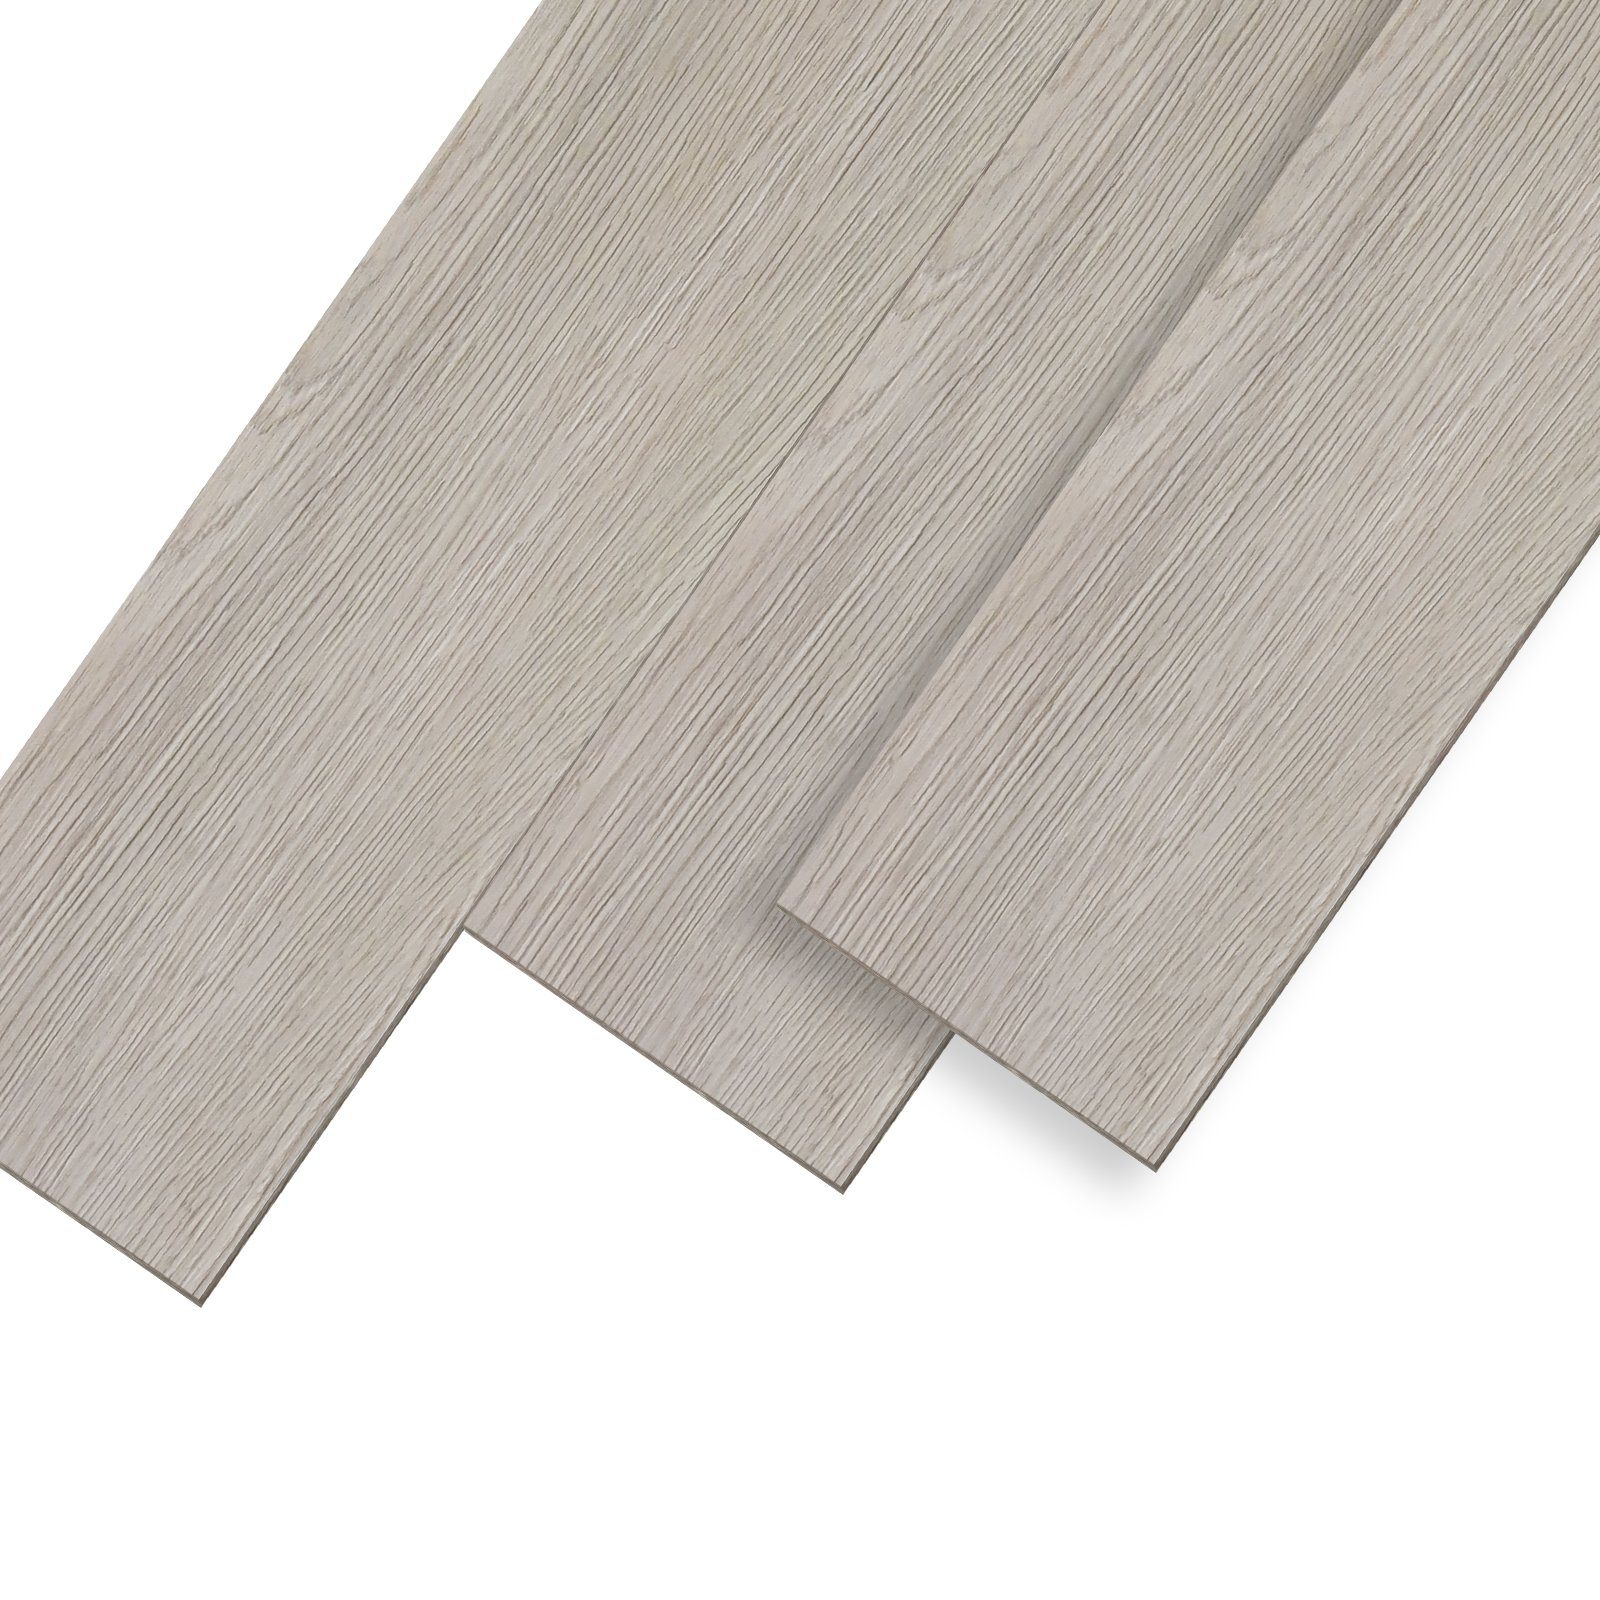 UISEBRT Vinylboden PVC Bodenbelag Selbstklebend Holz-Optik Dekor-Dielen Beigegrau